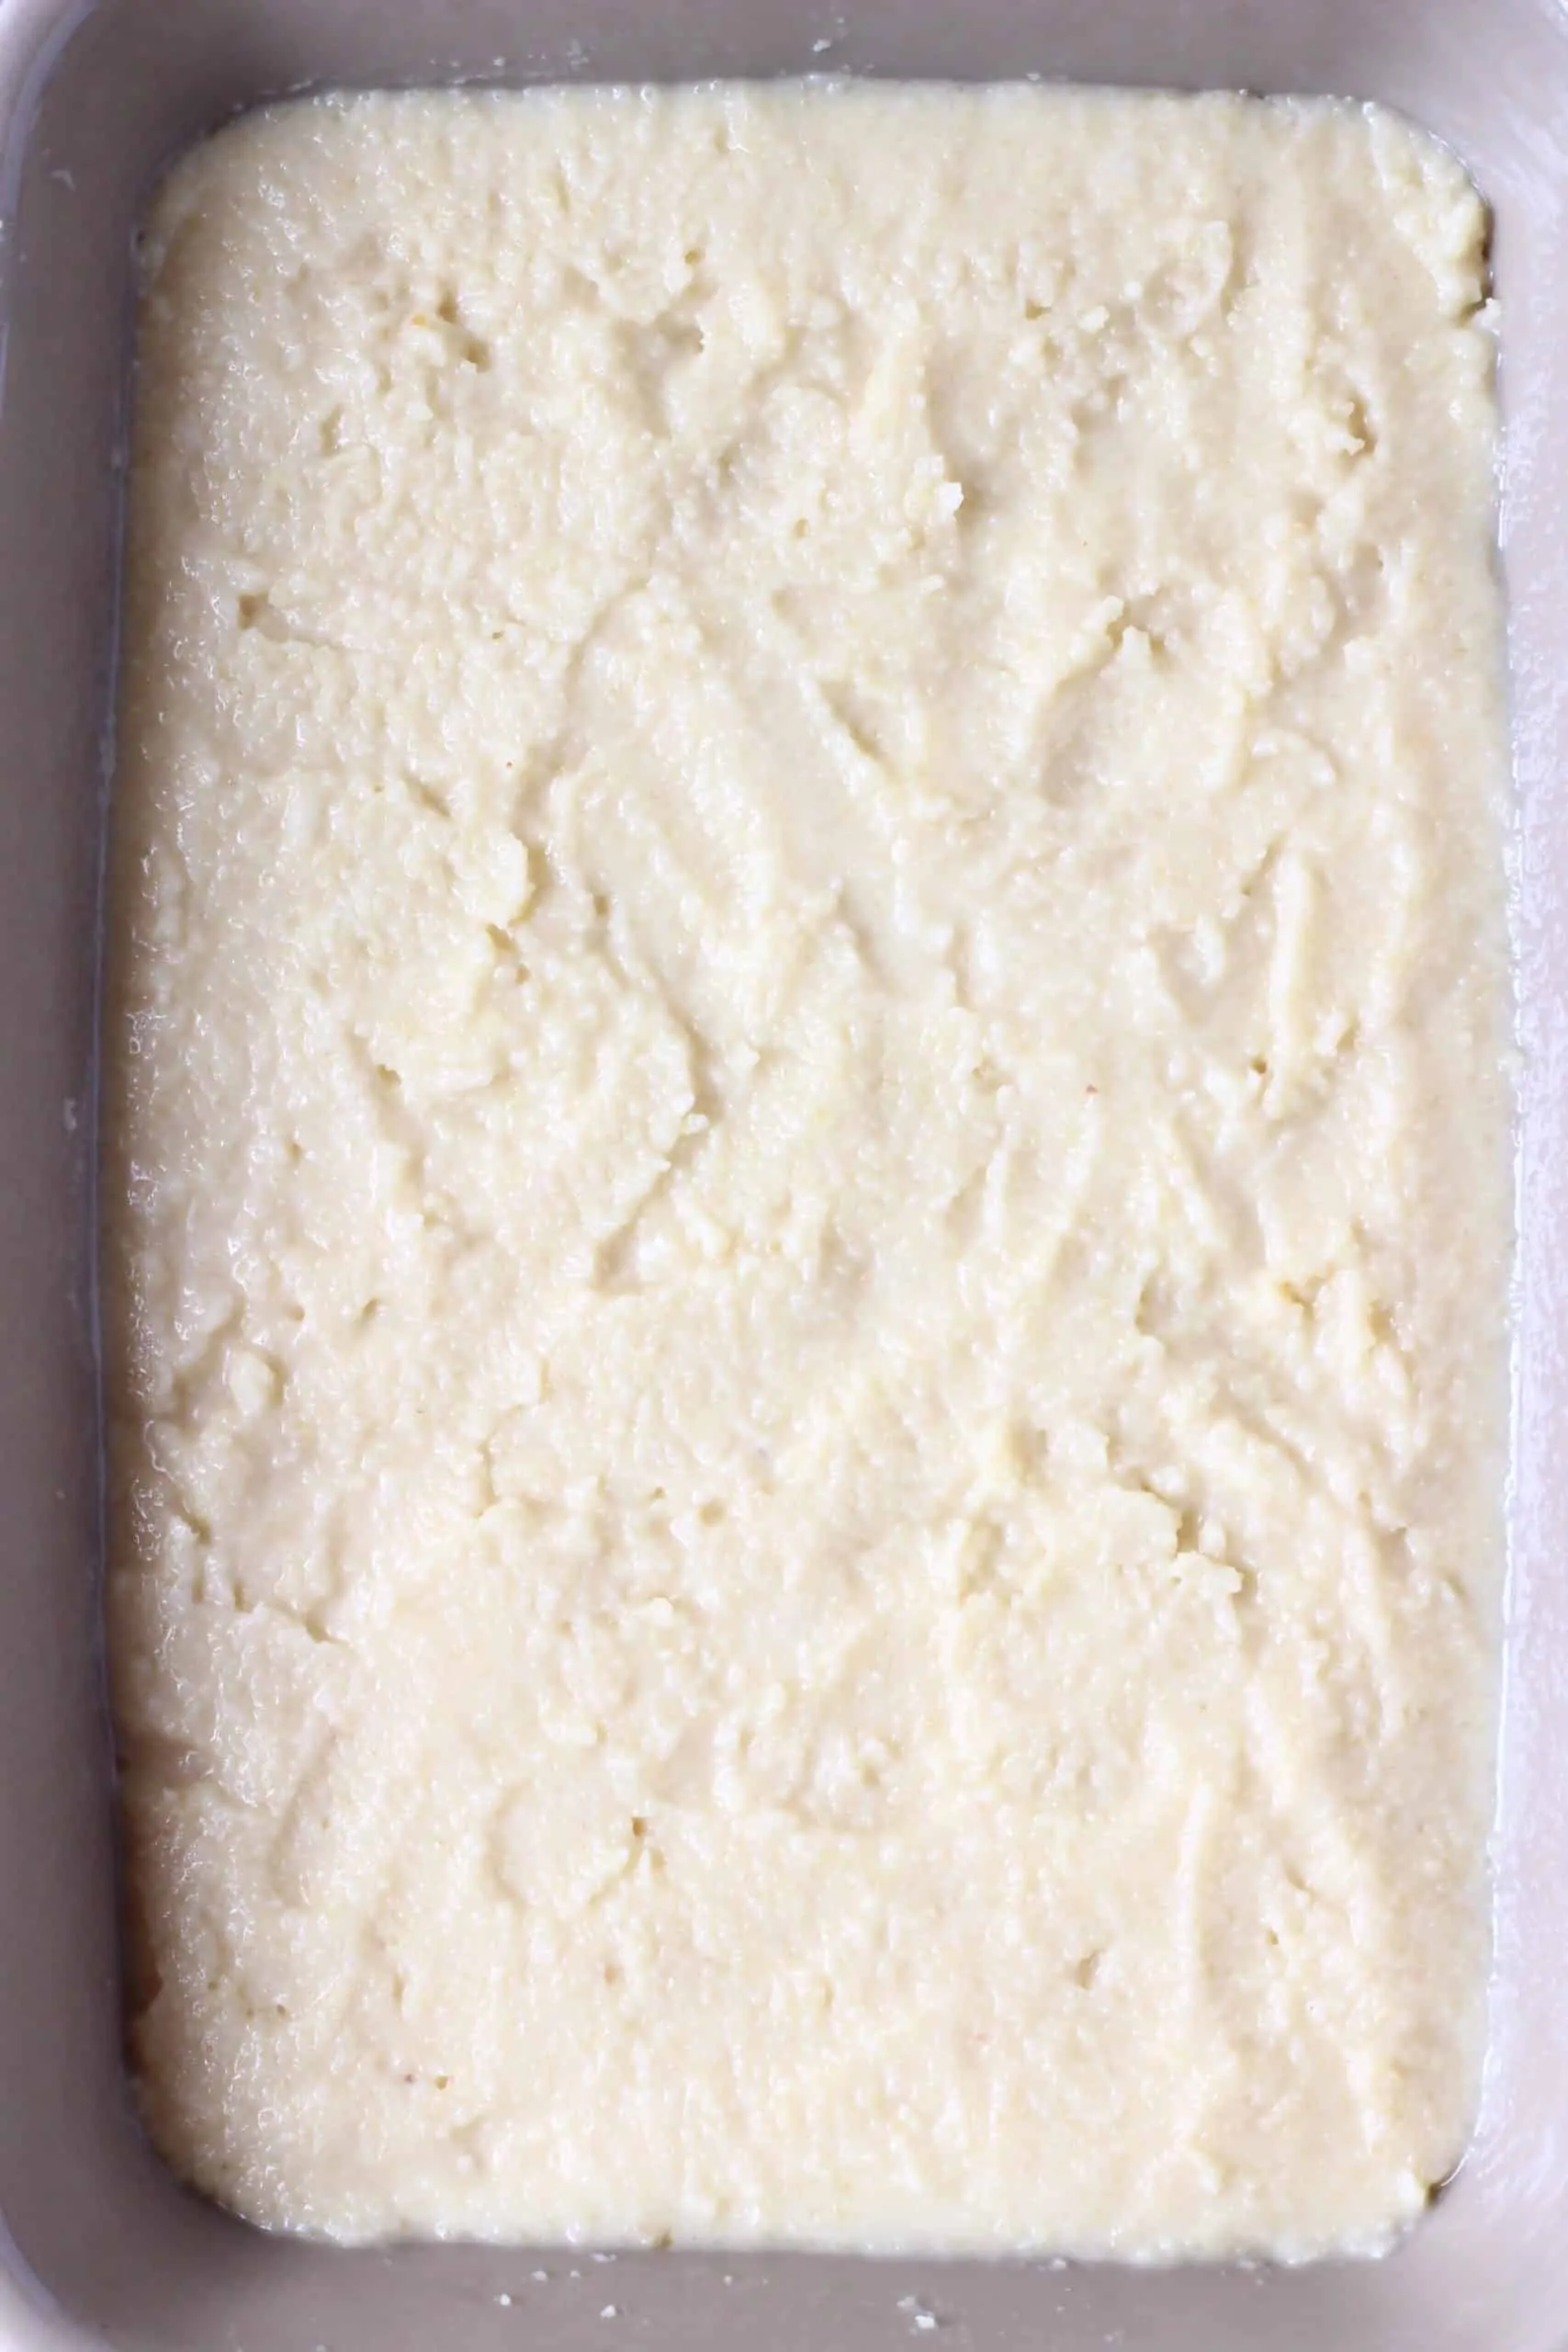 Raw vegan lemon pudding in a grey rectangular baking dish